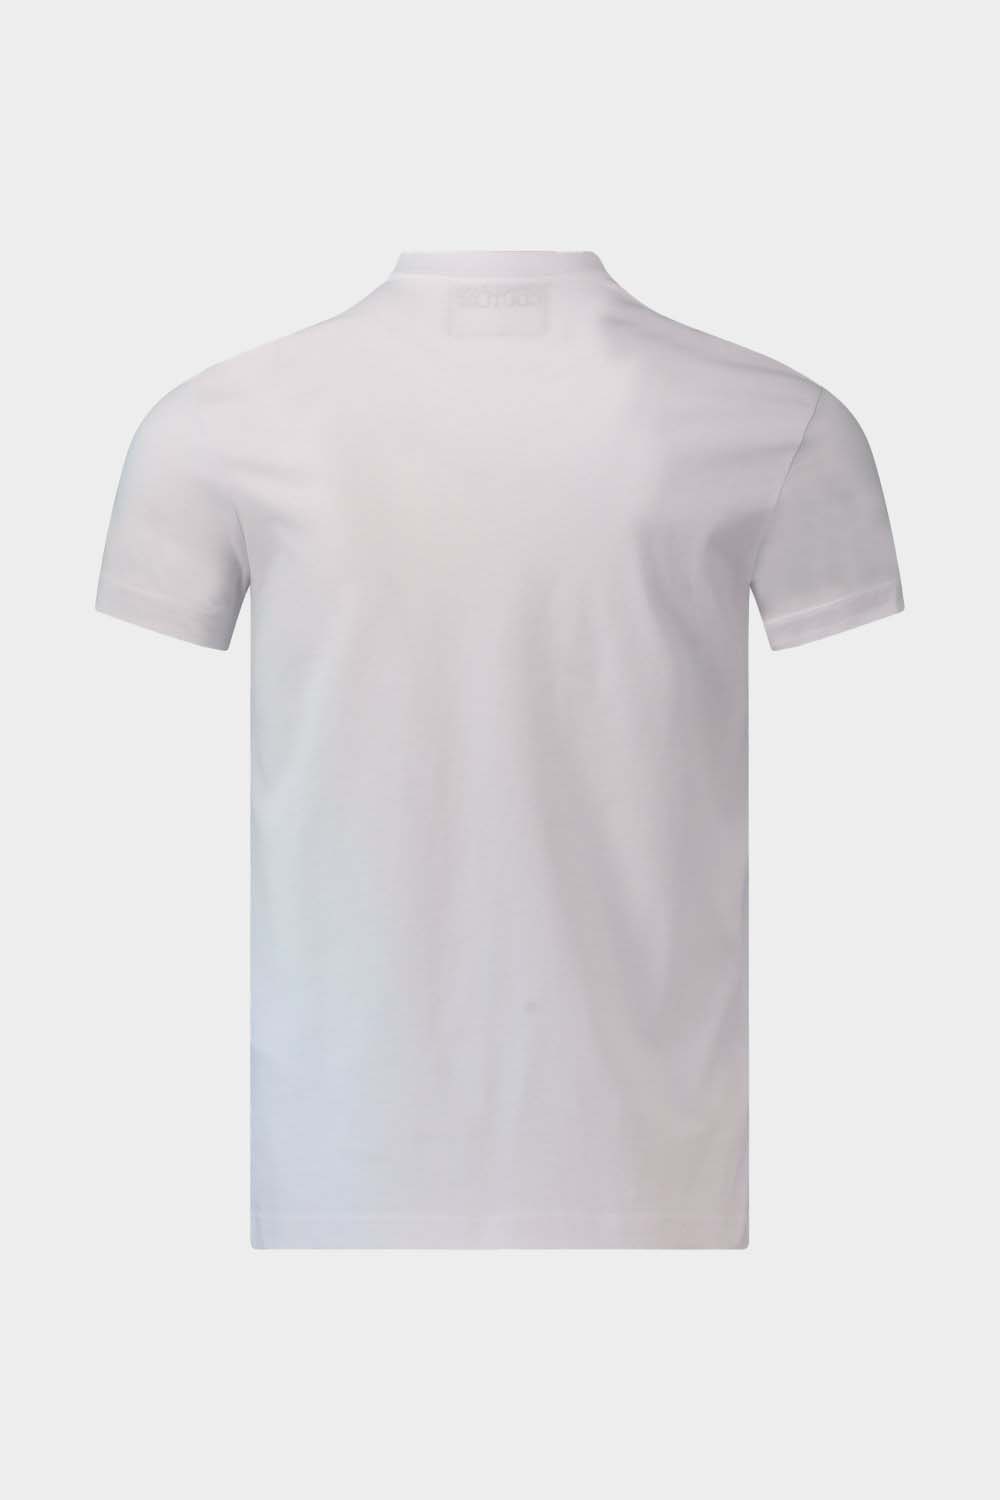 חולצת טי שירט לגברים לוגו זהוב VERSACE Vendome online | ונדום .